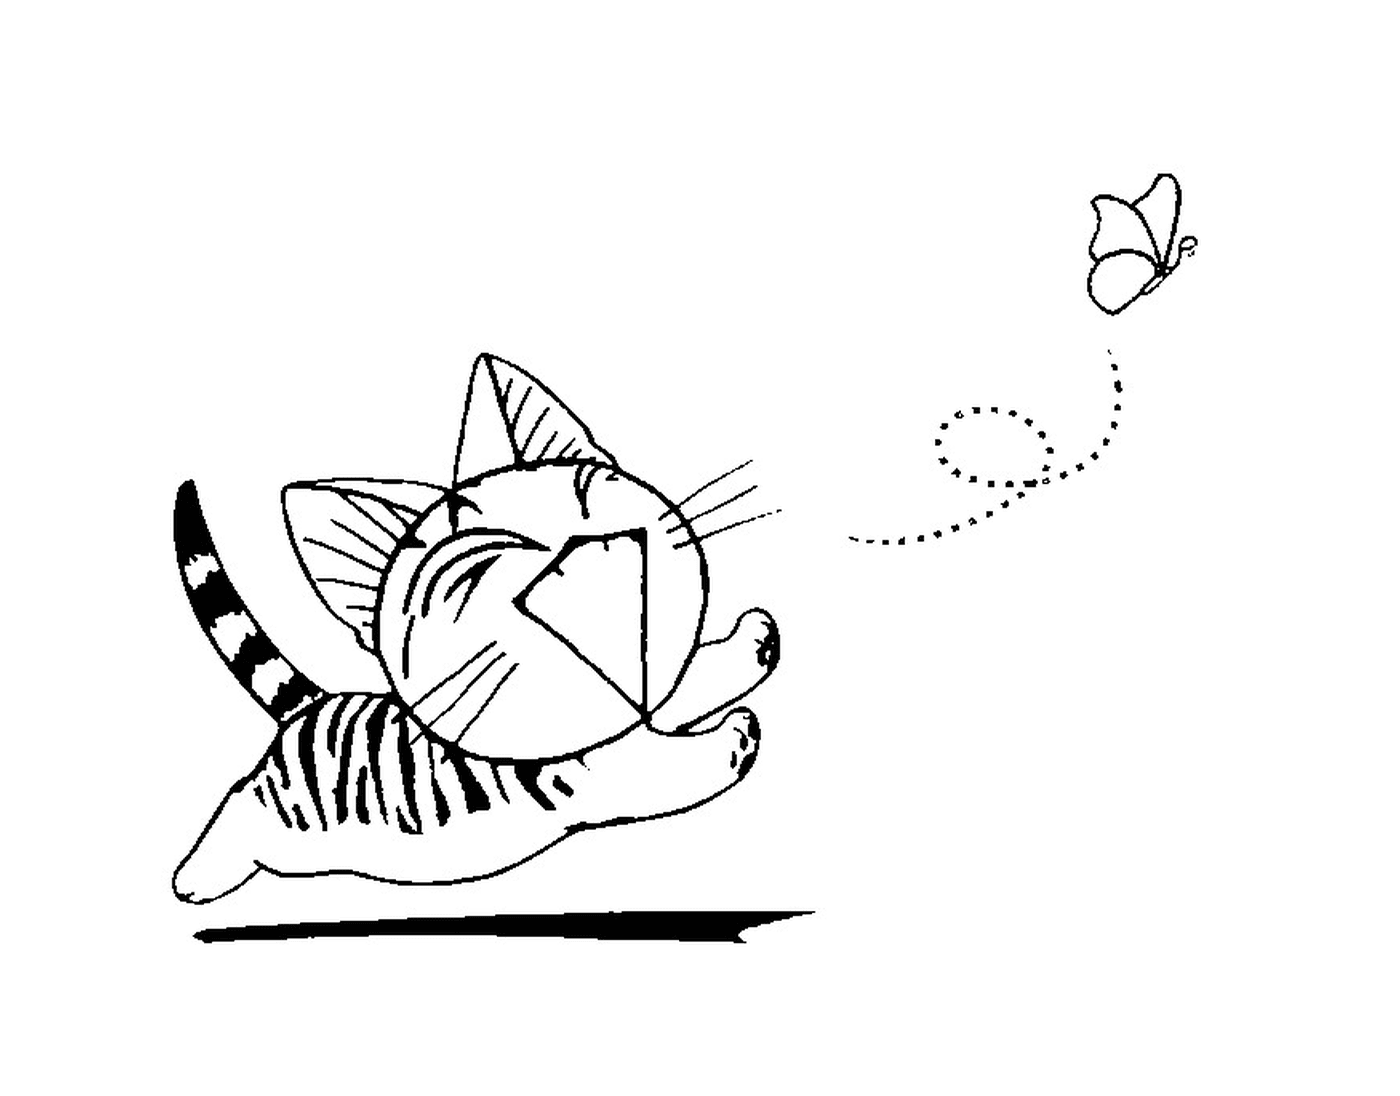  Un gatto cinese che corre dietro a una farfalla 